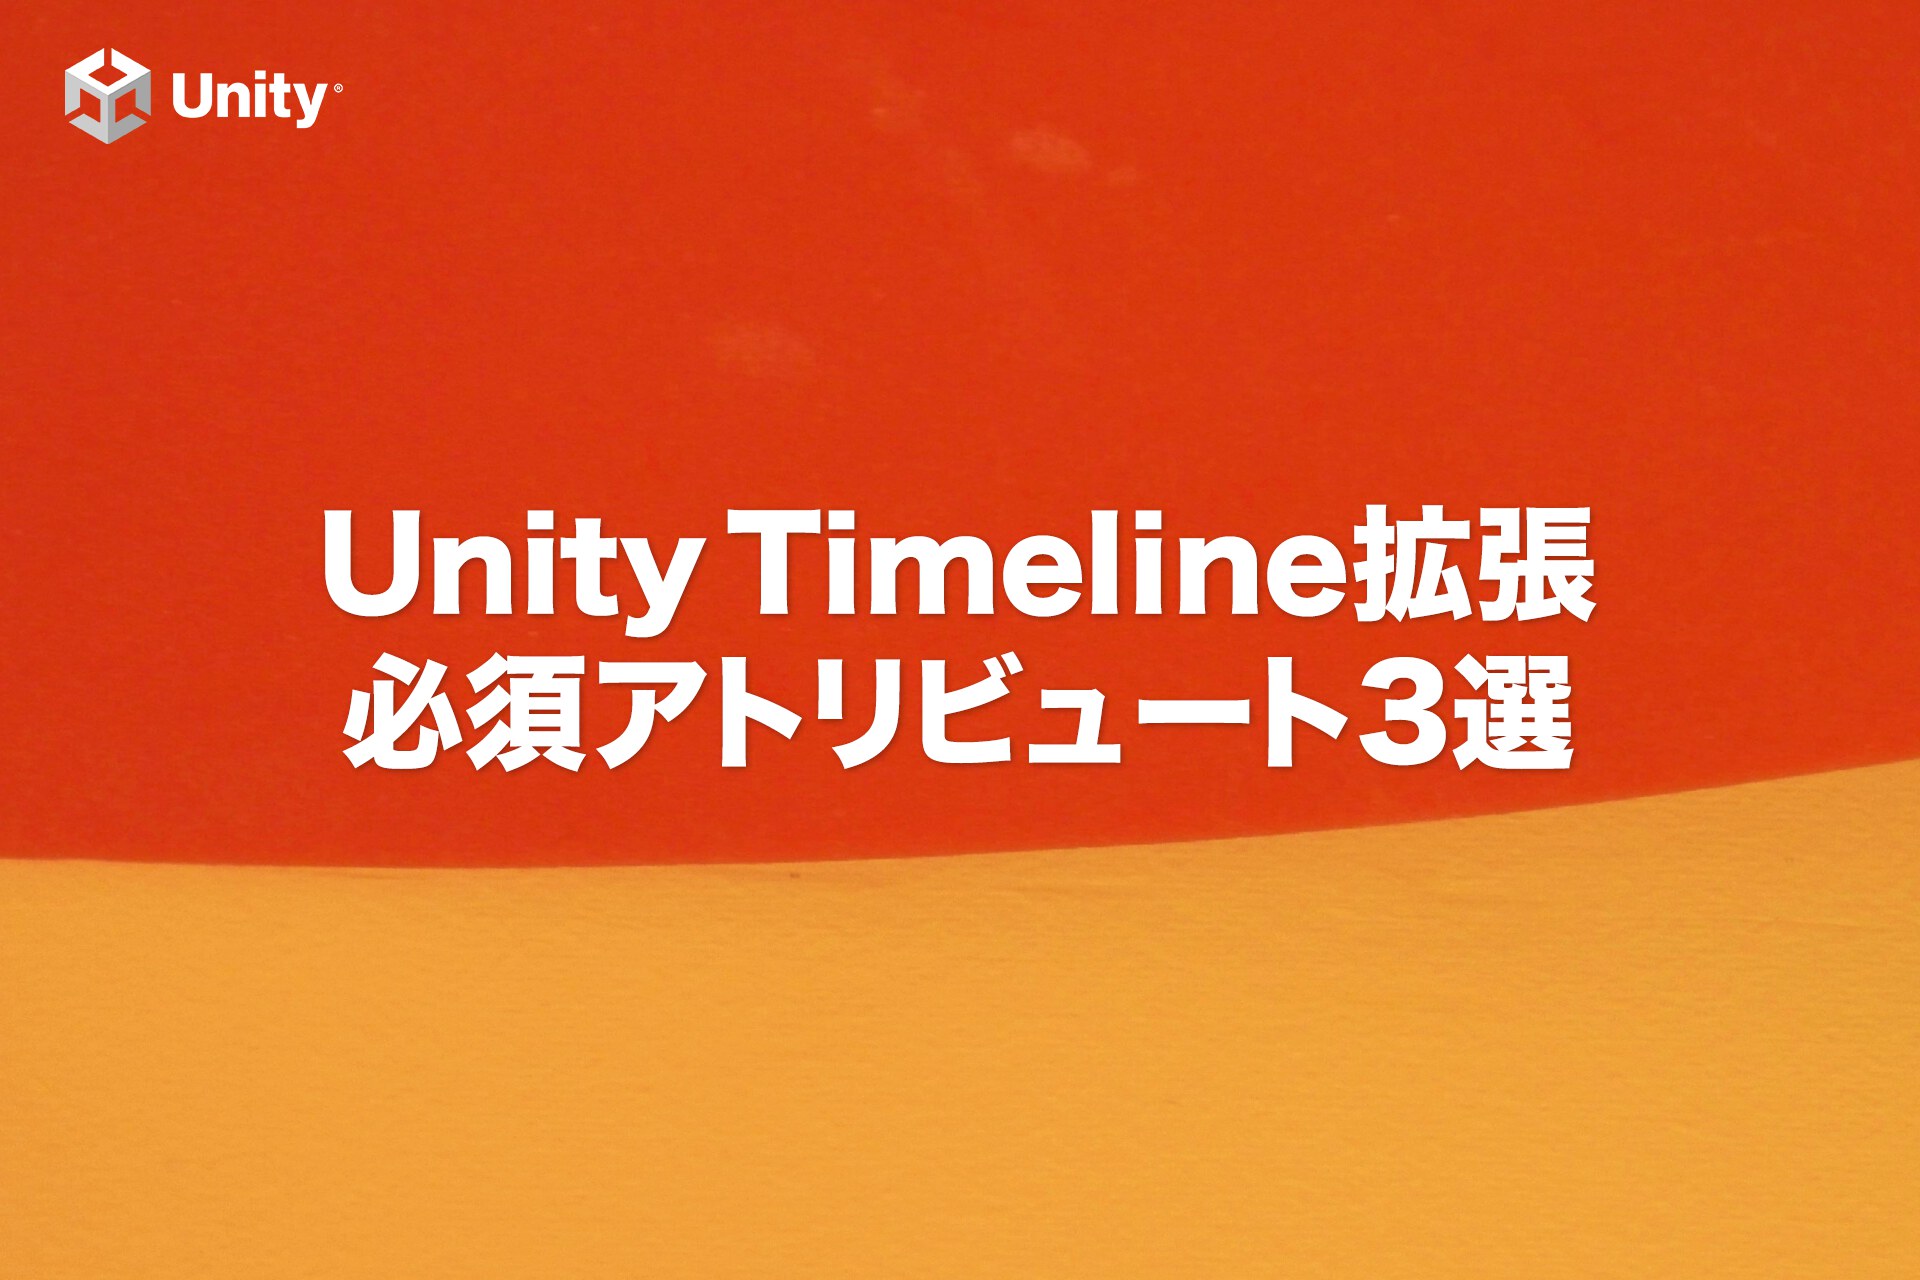 【Unity】Timeline拡張に必須！3つのアトリビュート